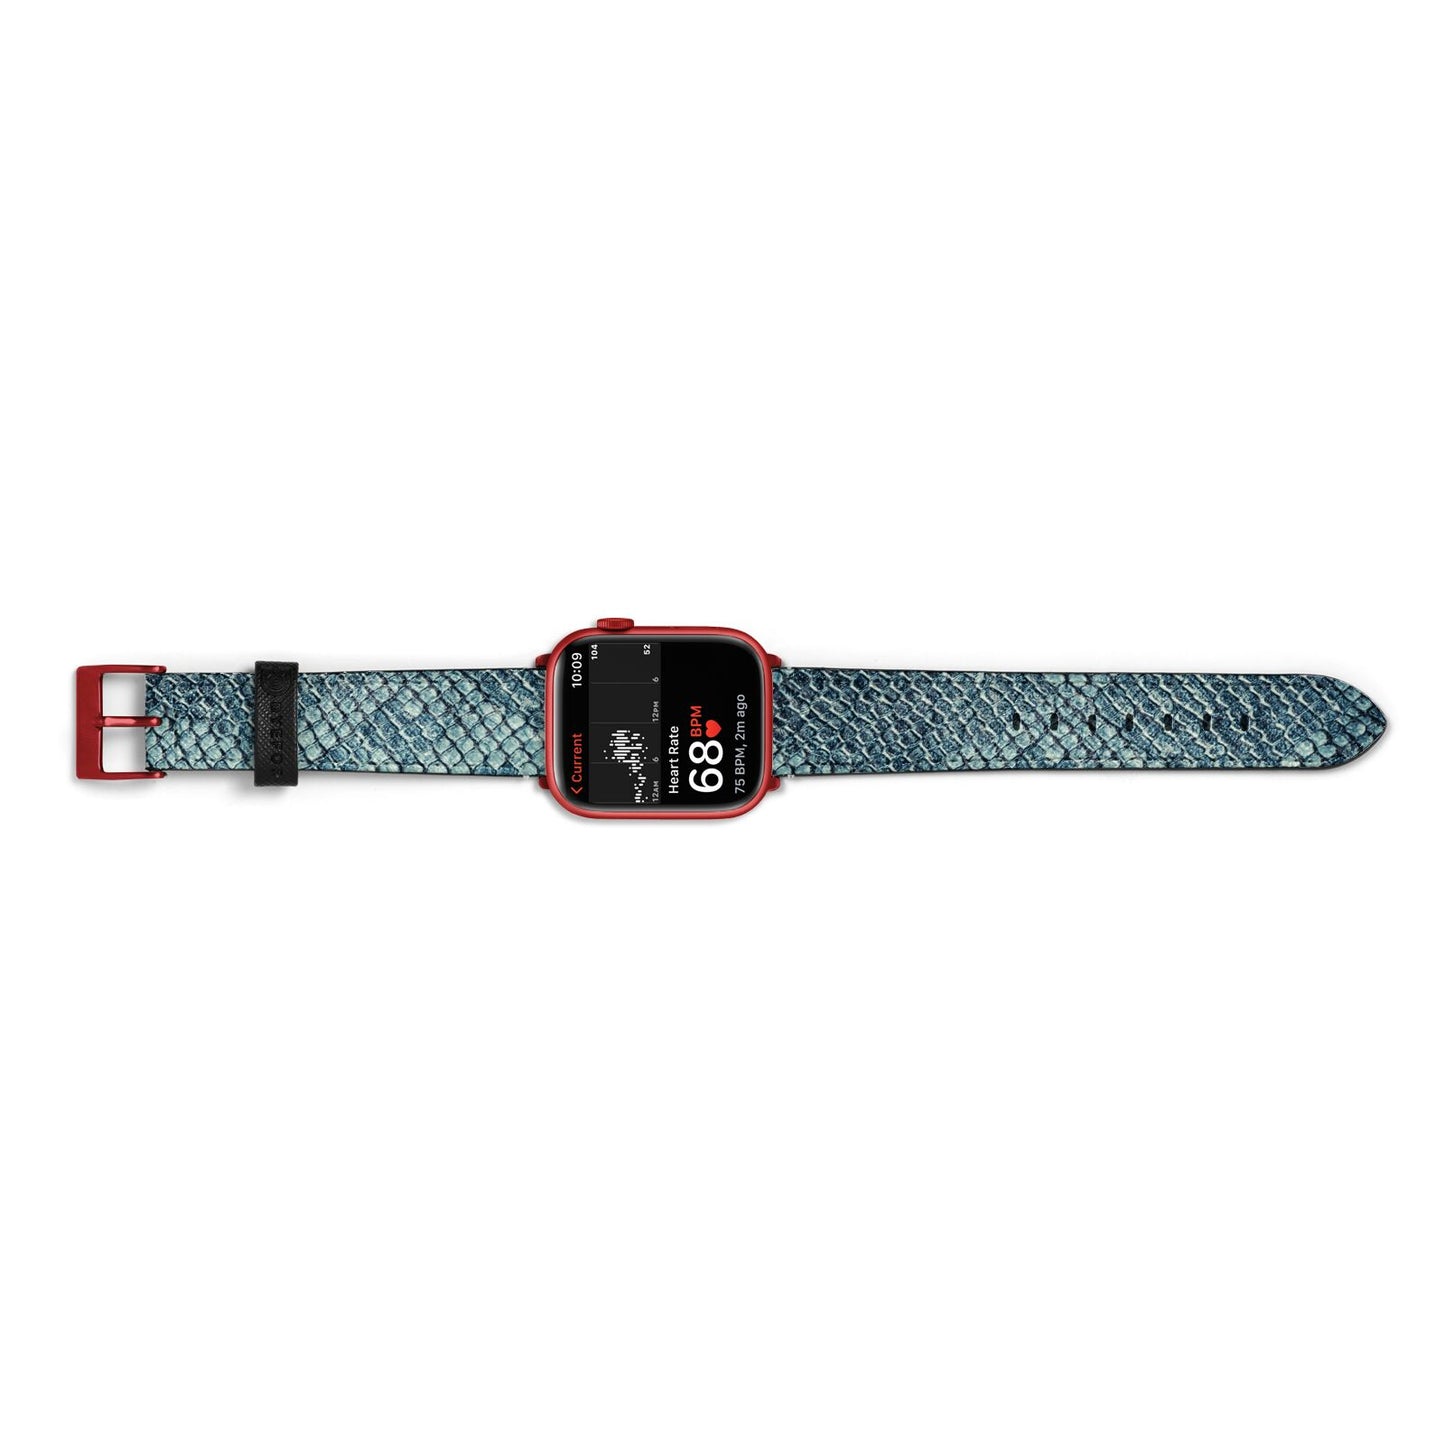 Teal Snakeskin Apple Watch Strap Size 38mm Landscape Image Red Hardware